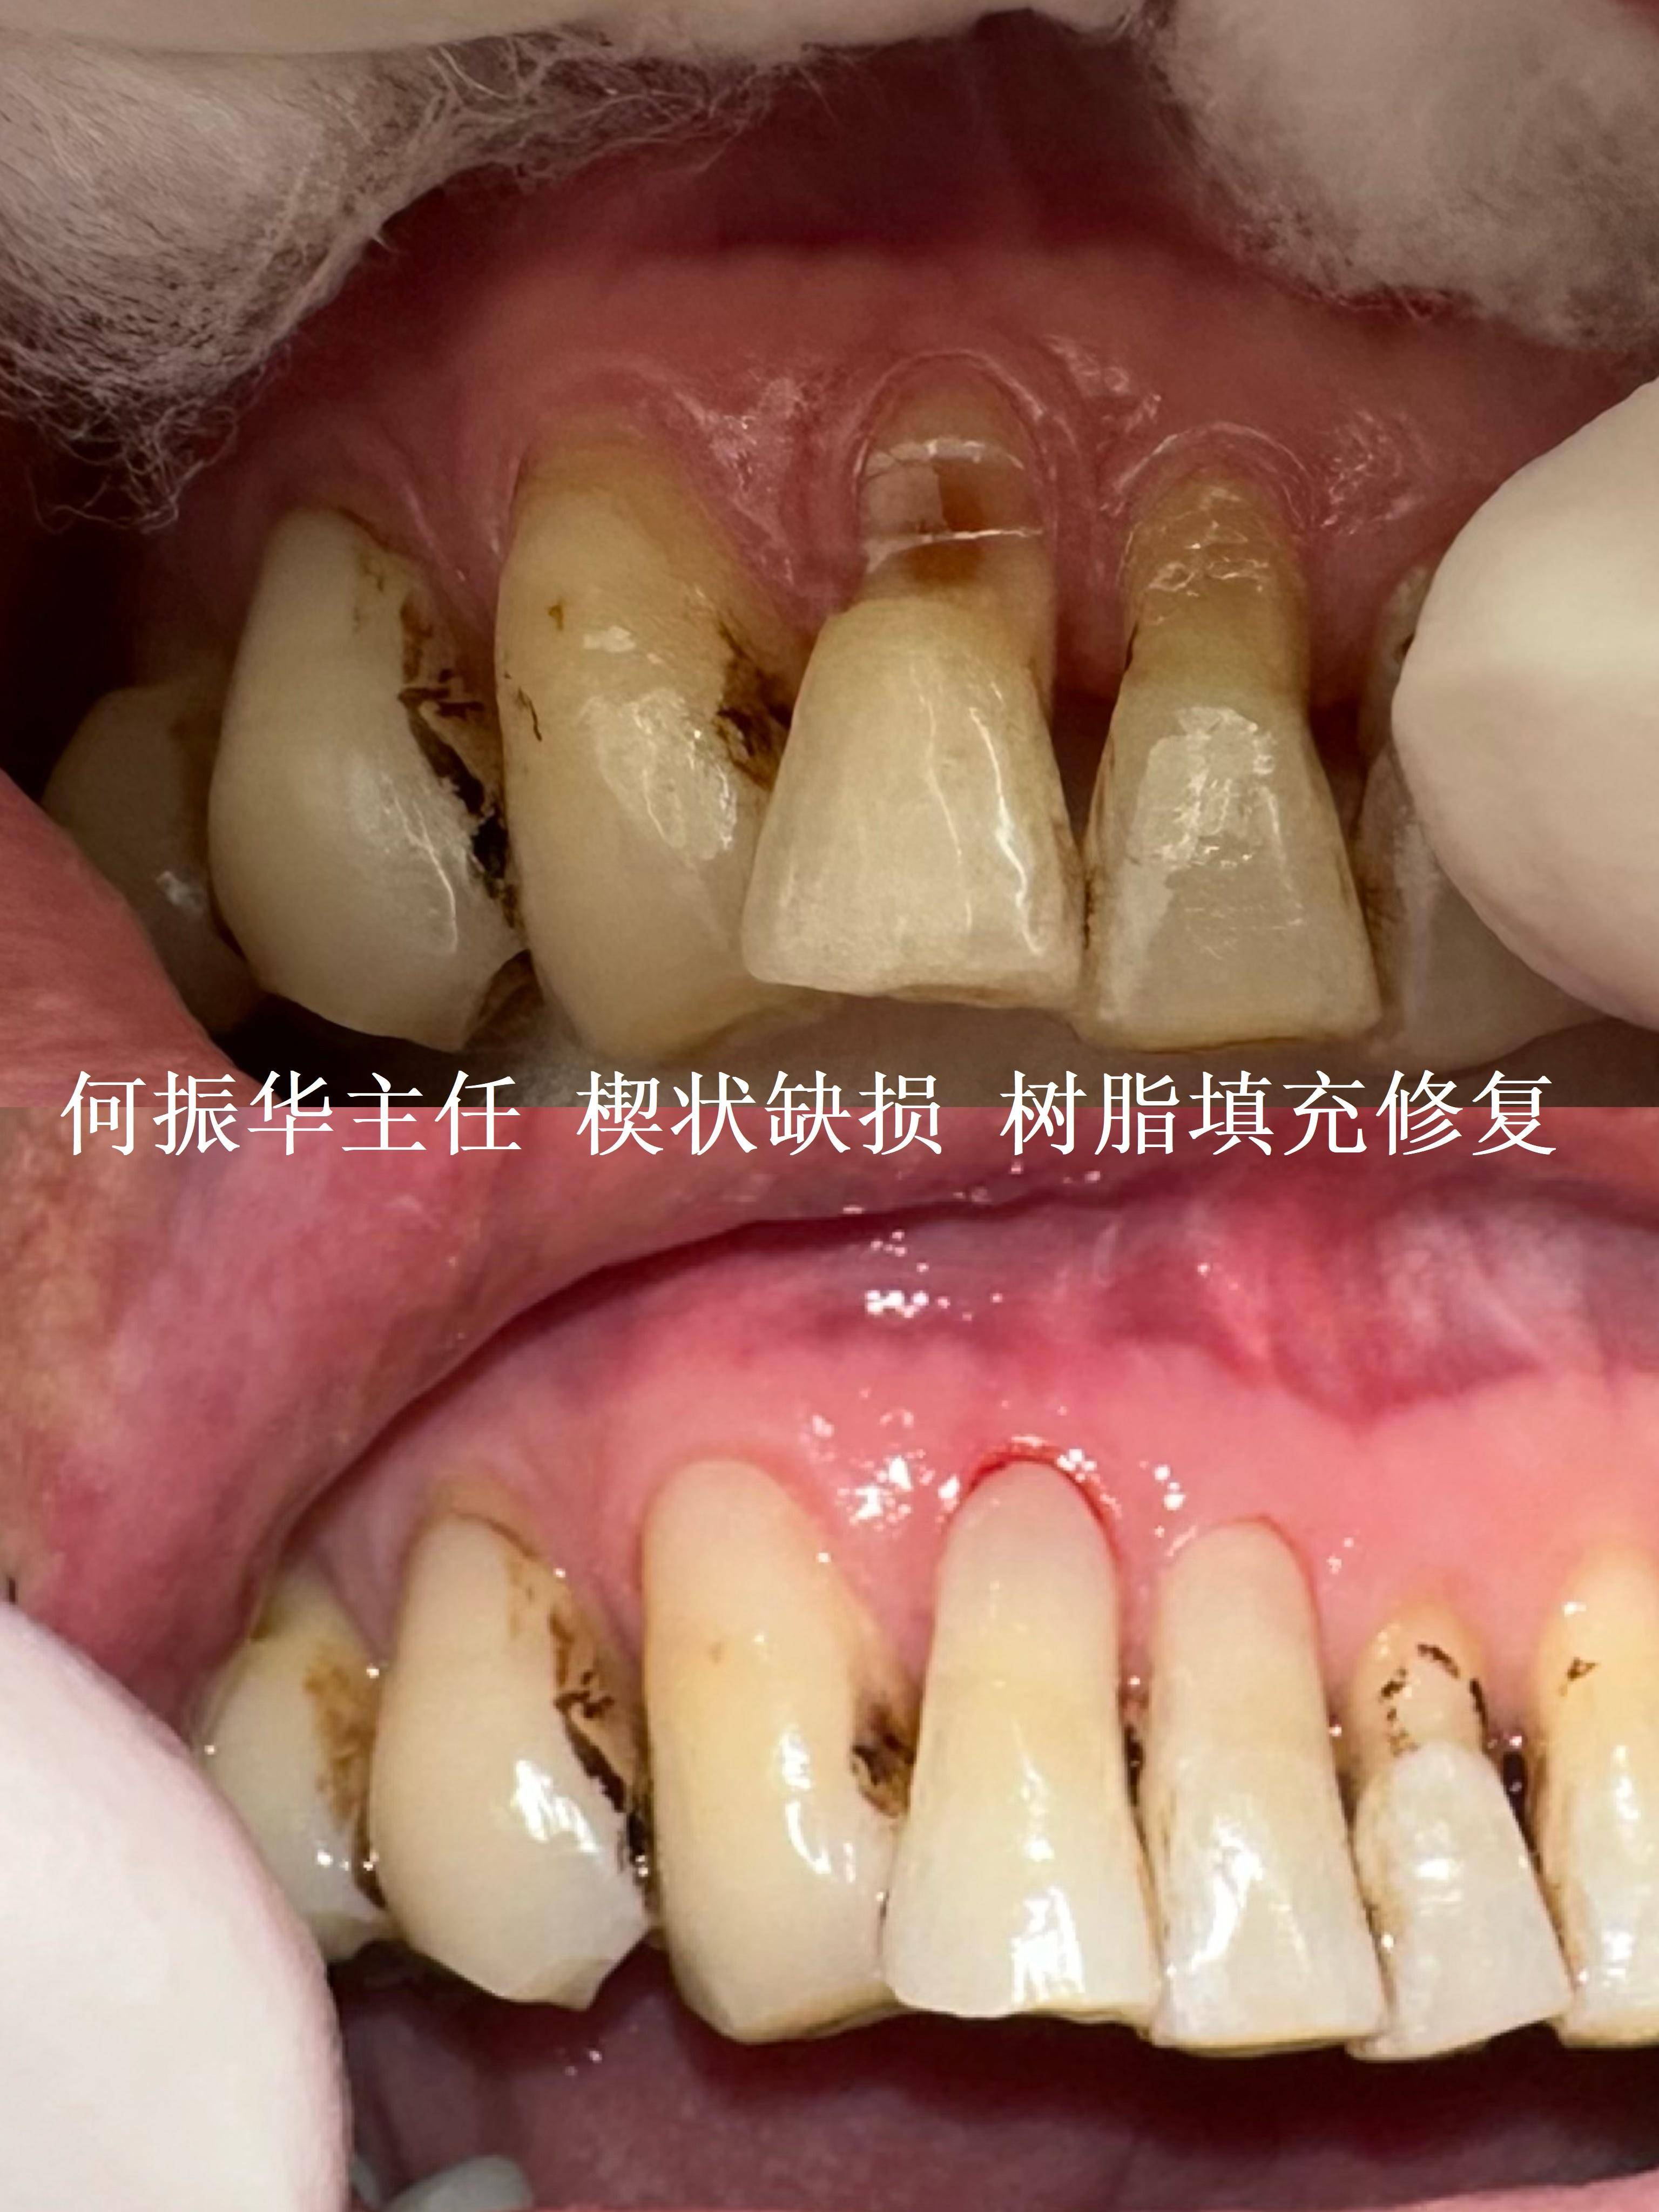 牙齿楔状缺损怎么治疗图片